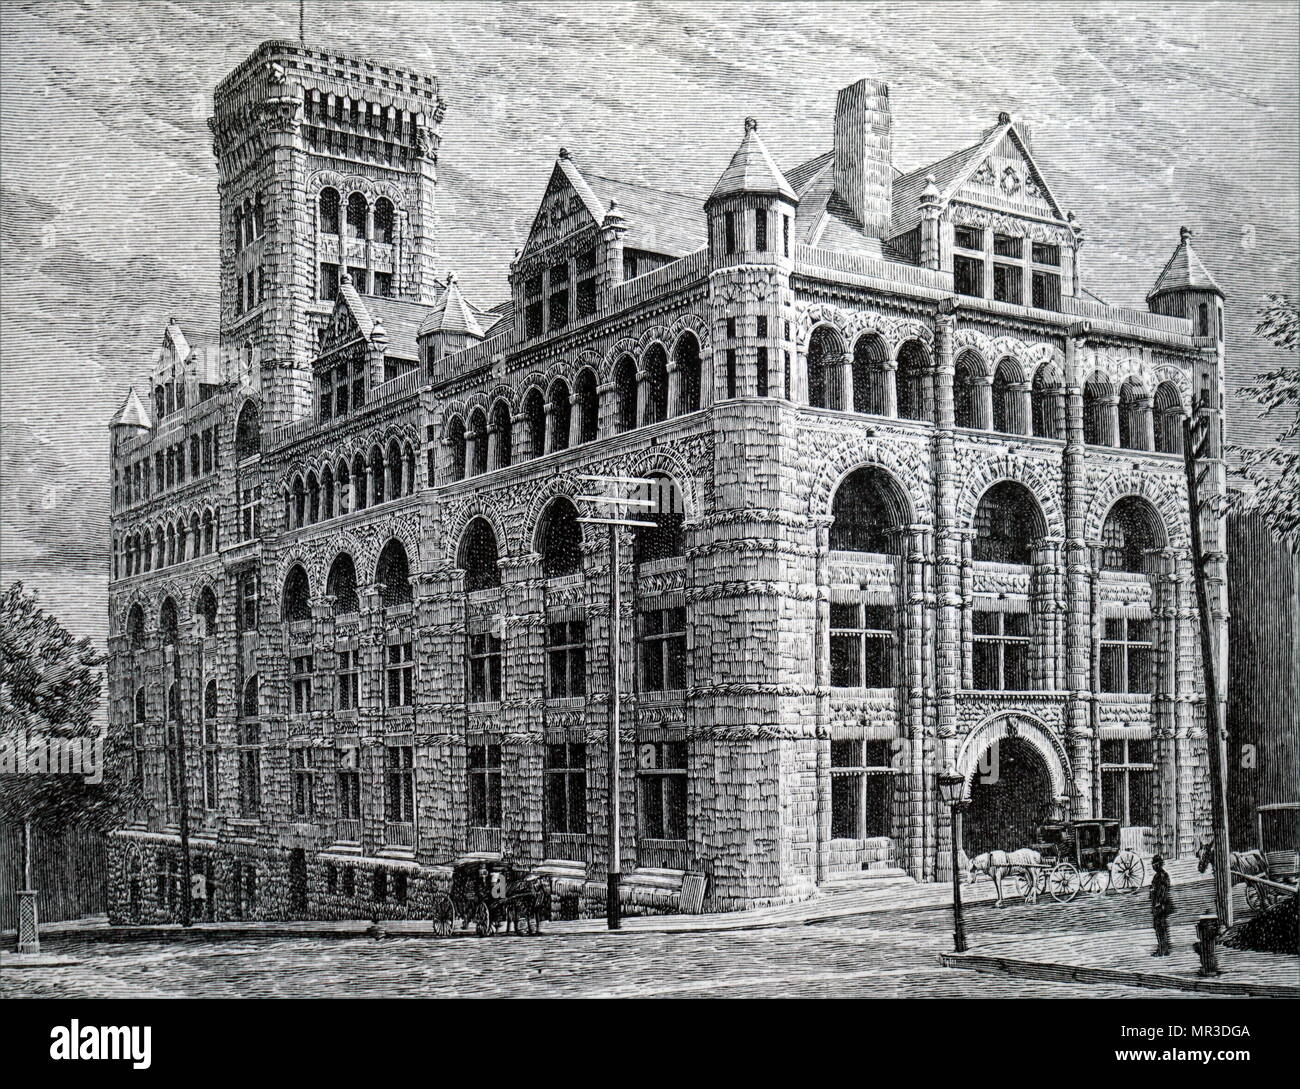 Abbildung: Darstellung der Hauptsitz der Canadian Pacific Railway, Montreal. Vom 19. Jahrhundert Stockfoto